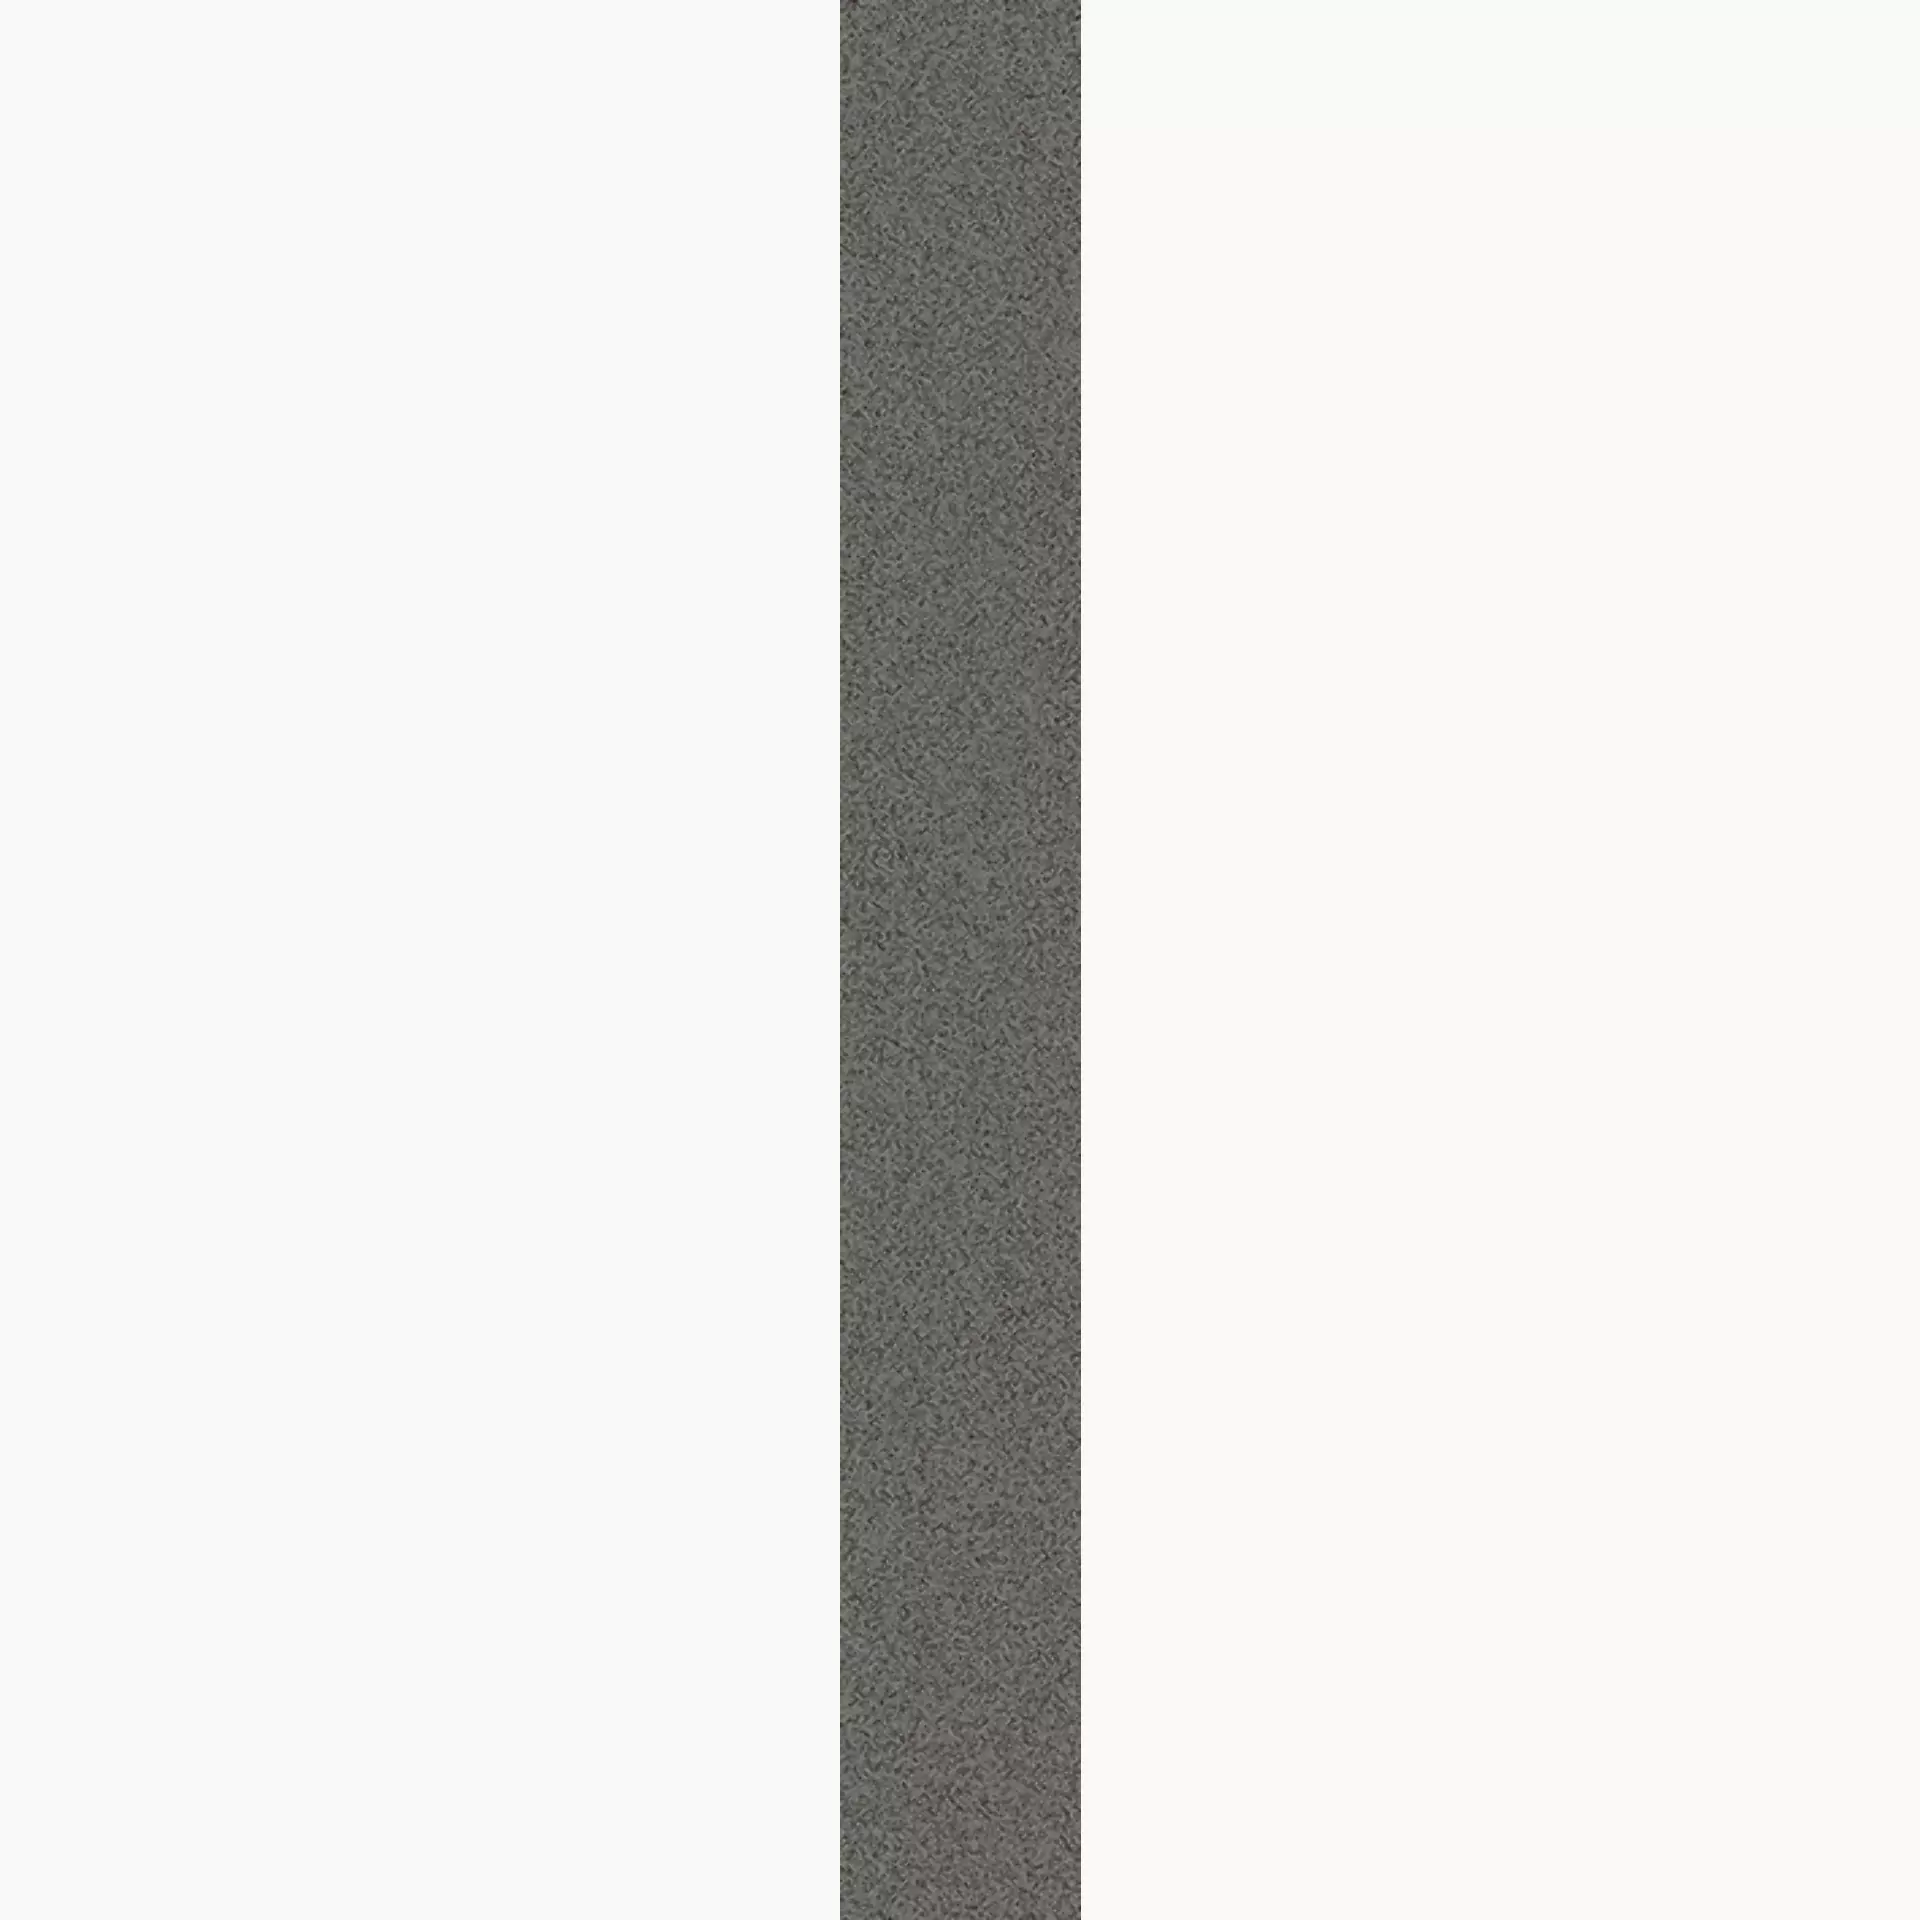 Wandfliese,Bodenfliese Villeroy & Boch Pure Line 2.0 Concrete Grey Matt Concrete Grey 2617-UL62 matt 7,5x60cm rektifiziert 12mm